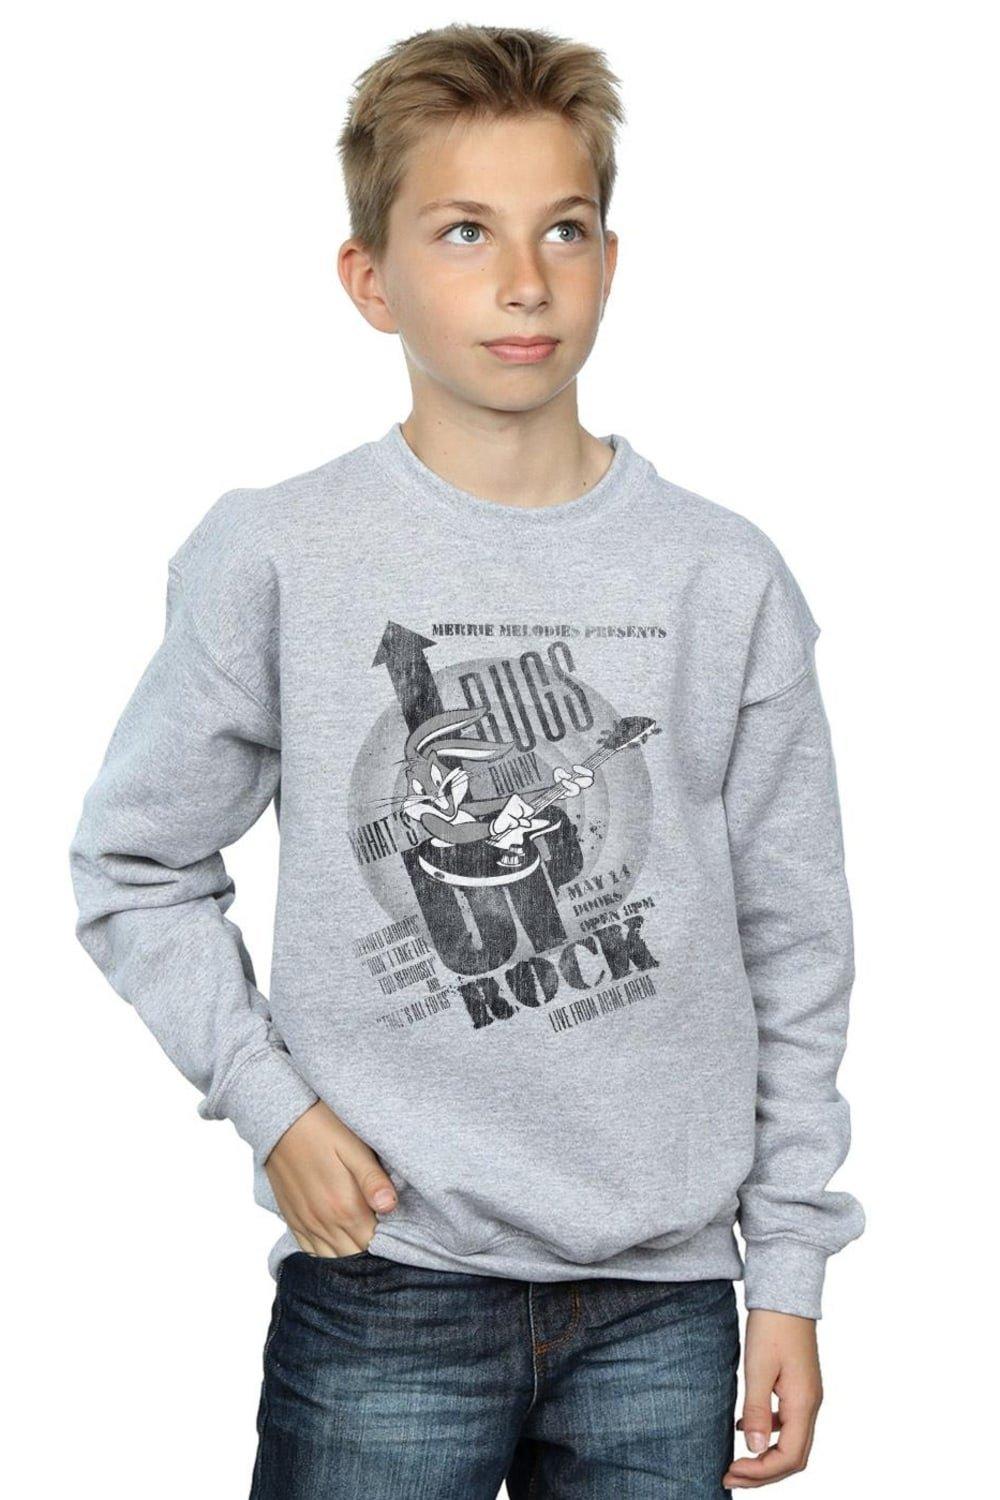 Bugs Bunny What’s Up Rock Sweatshirt